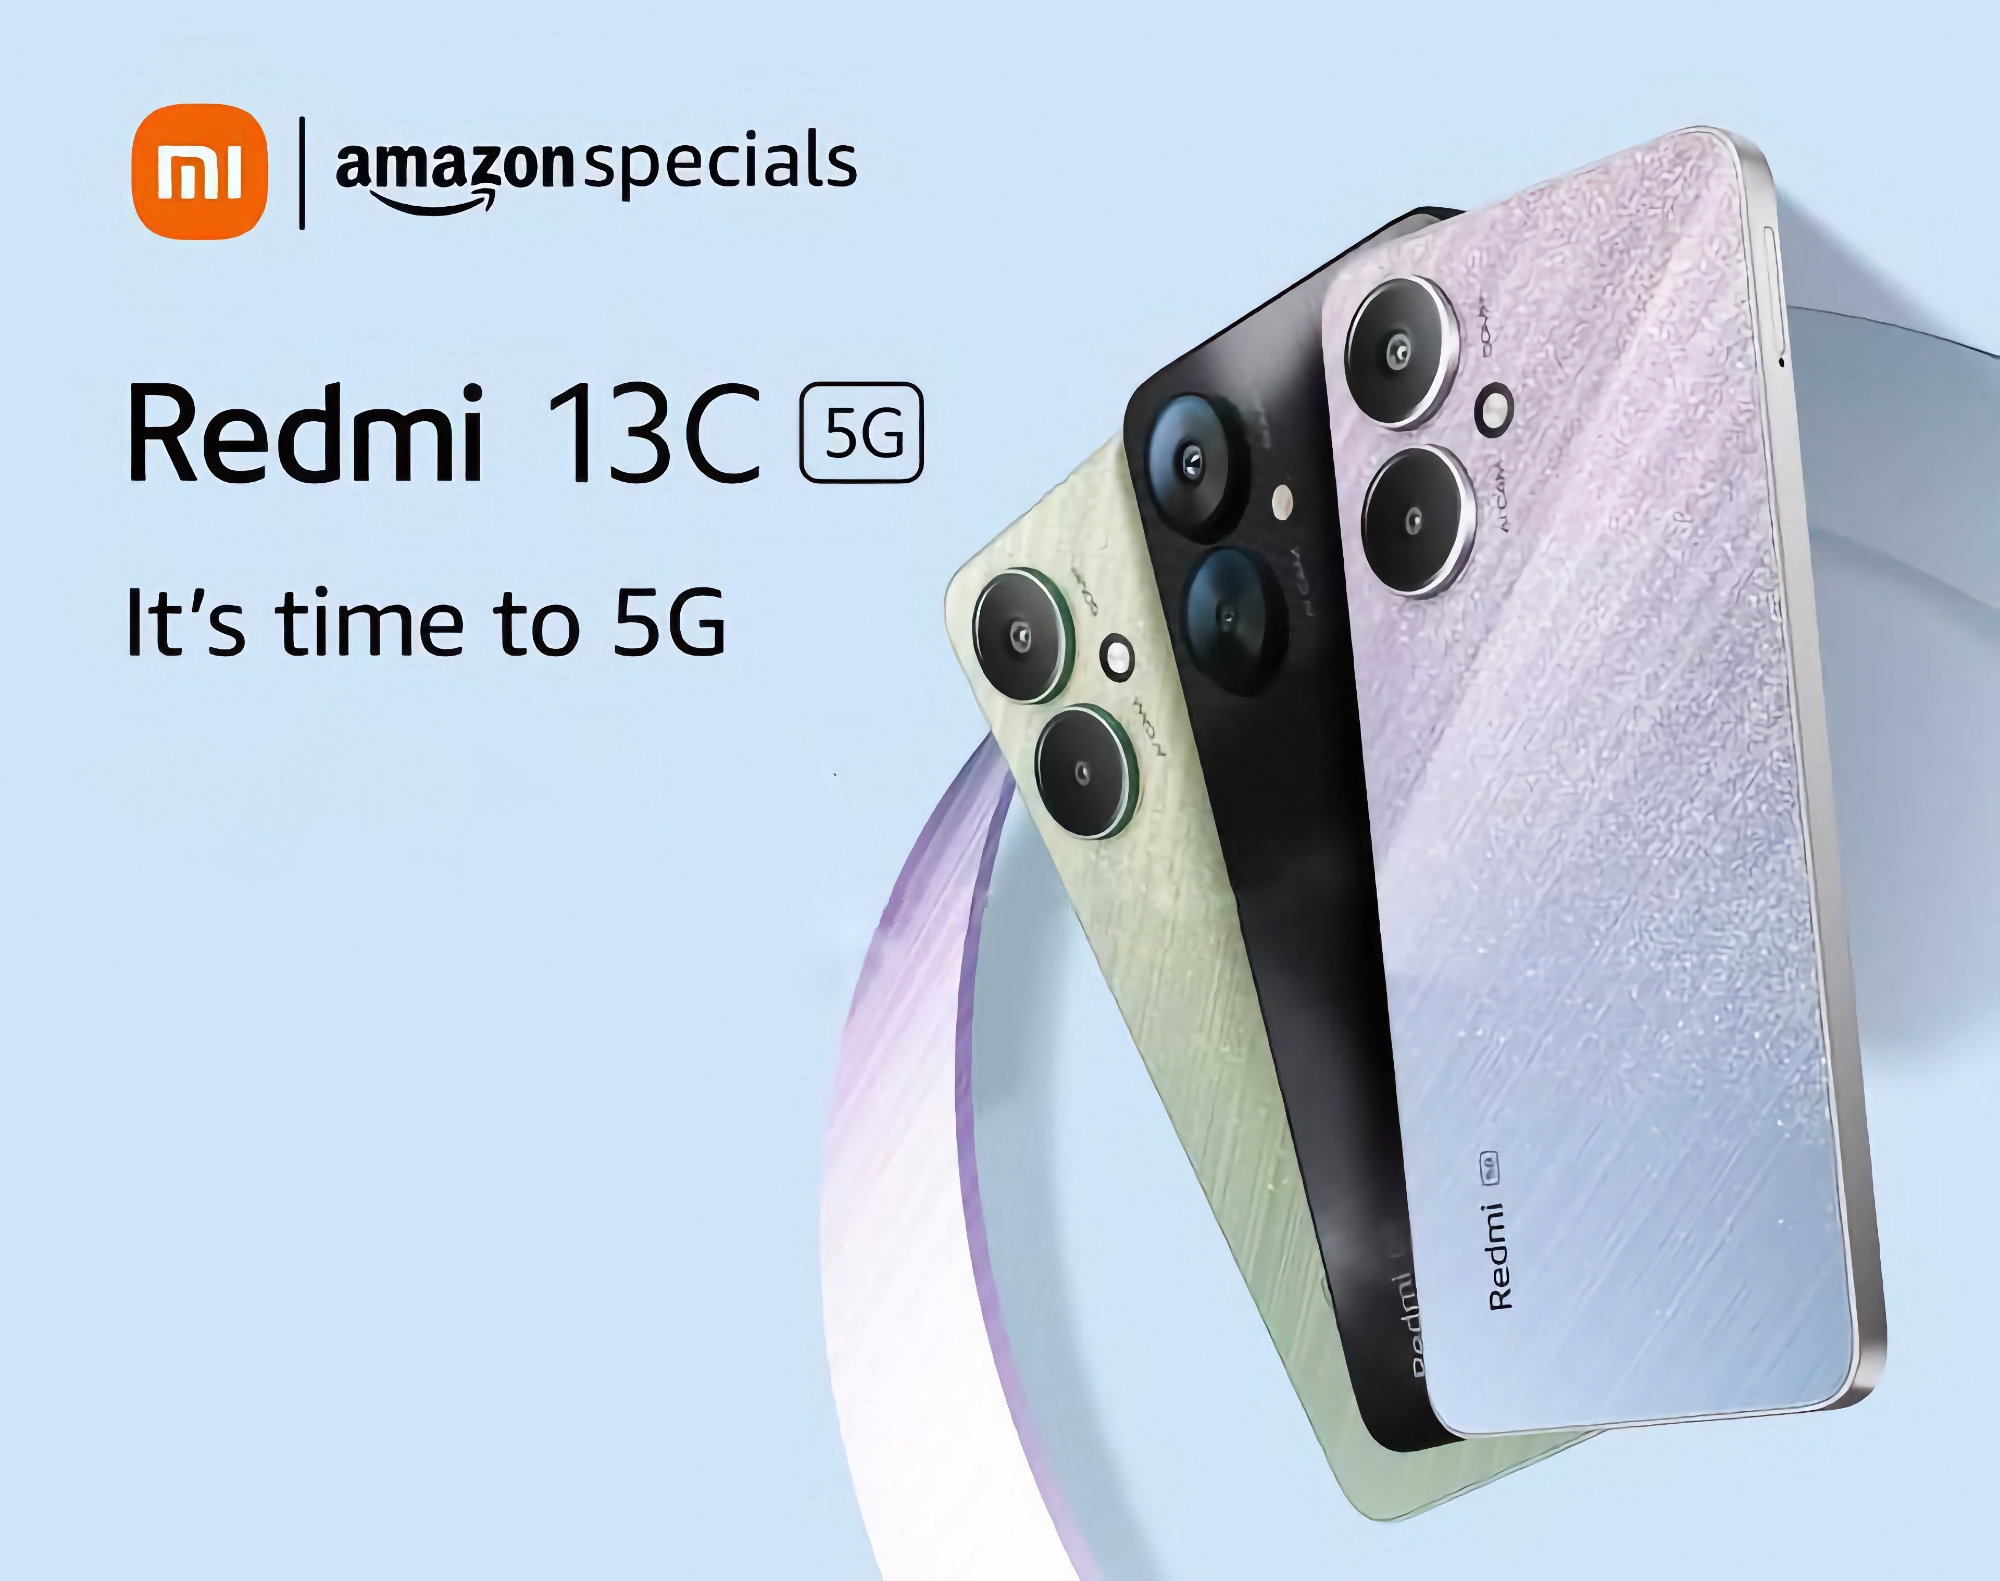 Det är officiellt: Redmi 13C 5G kommer att drivas av MediaTek Dimensity 6100+ processor